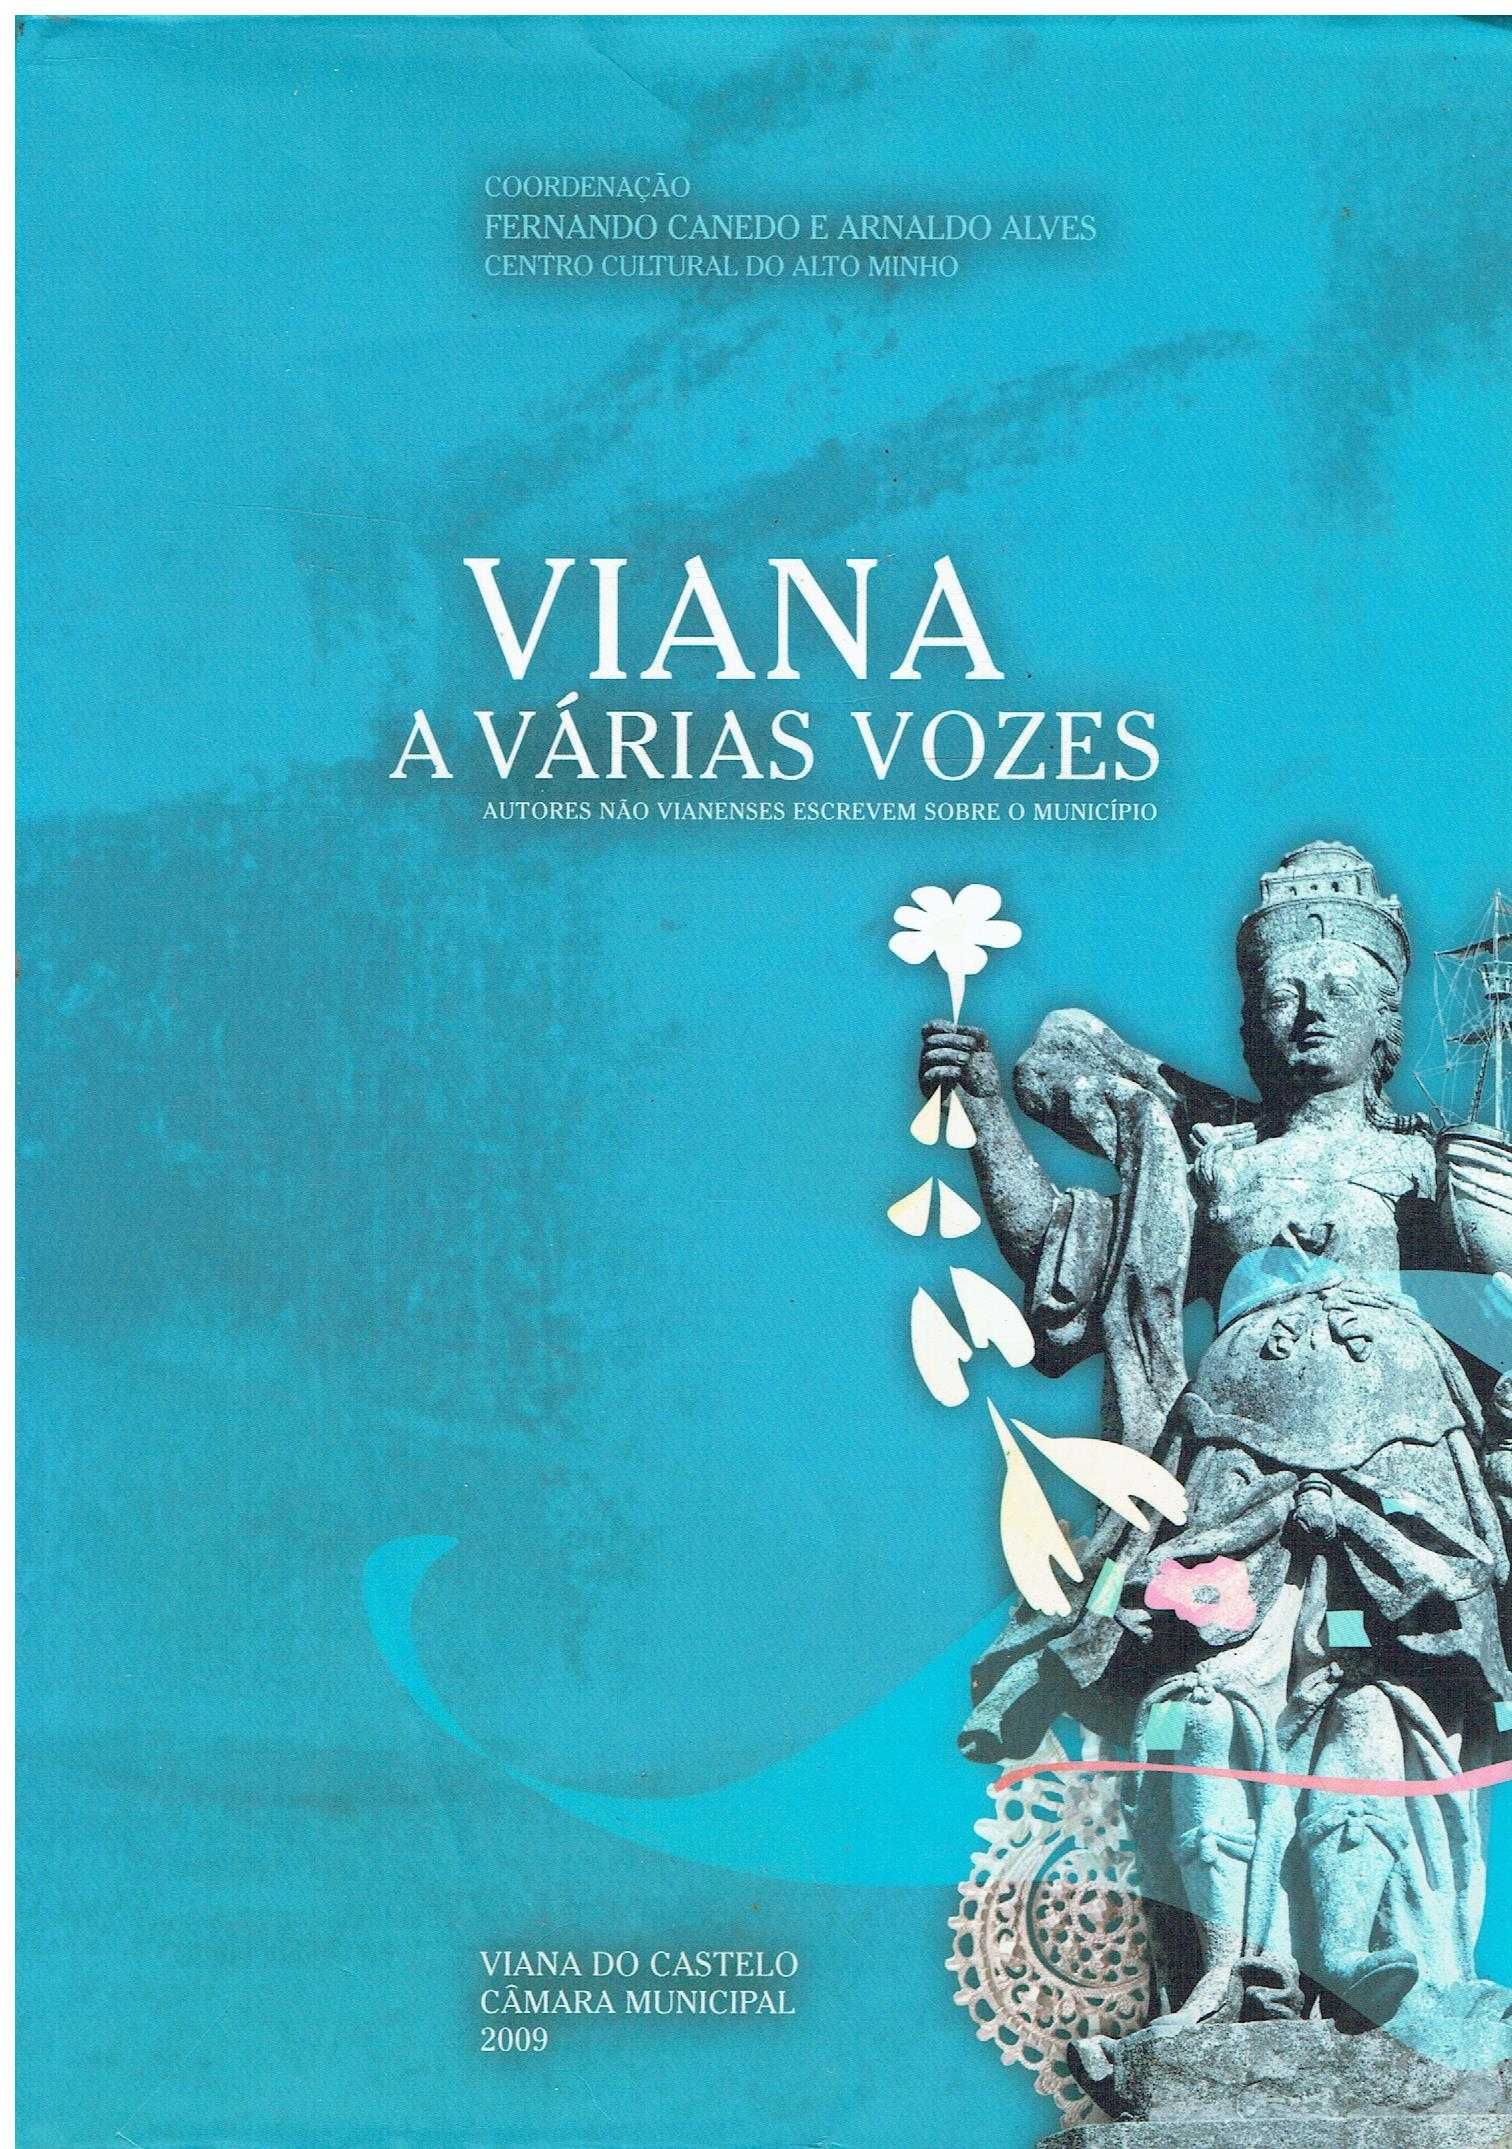 1051

Viana a várias vozes